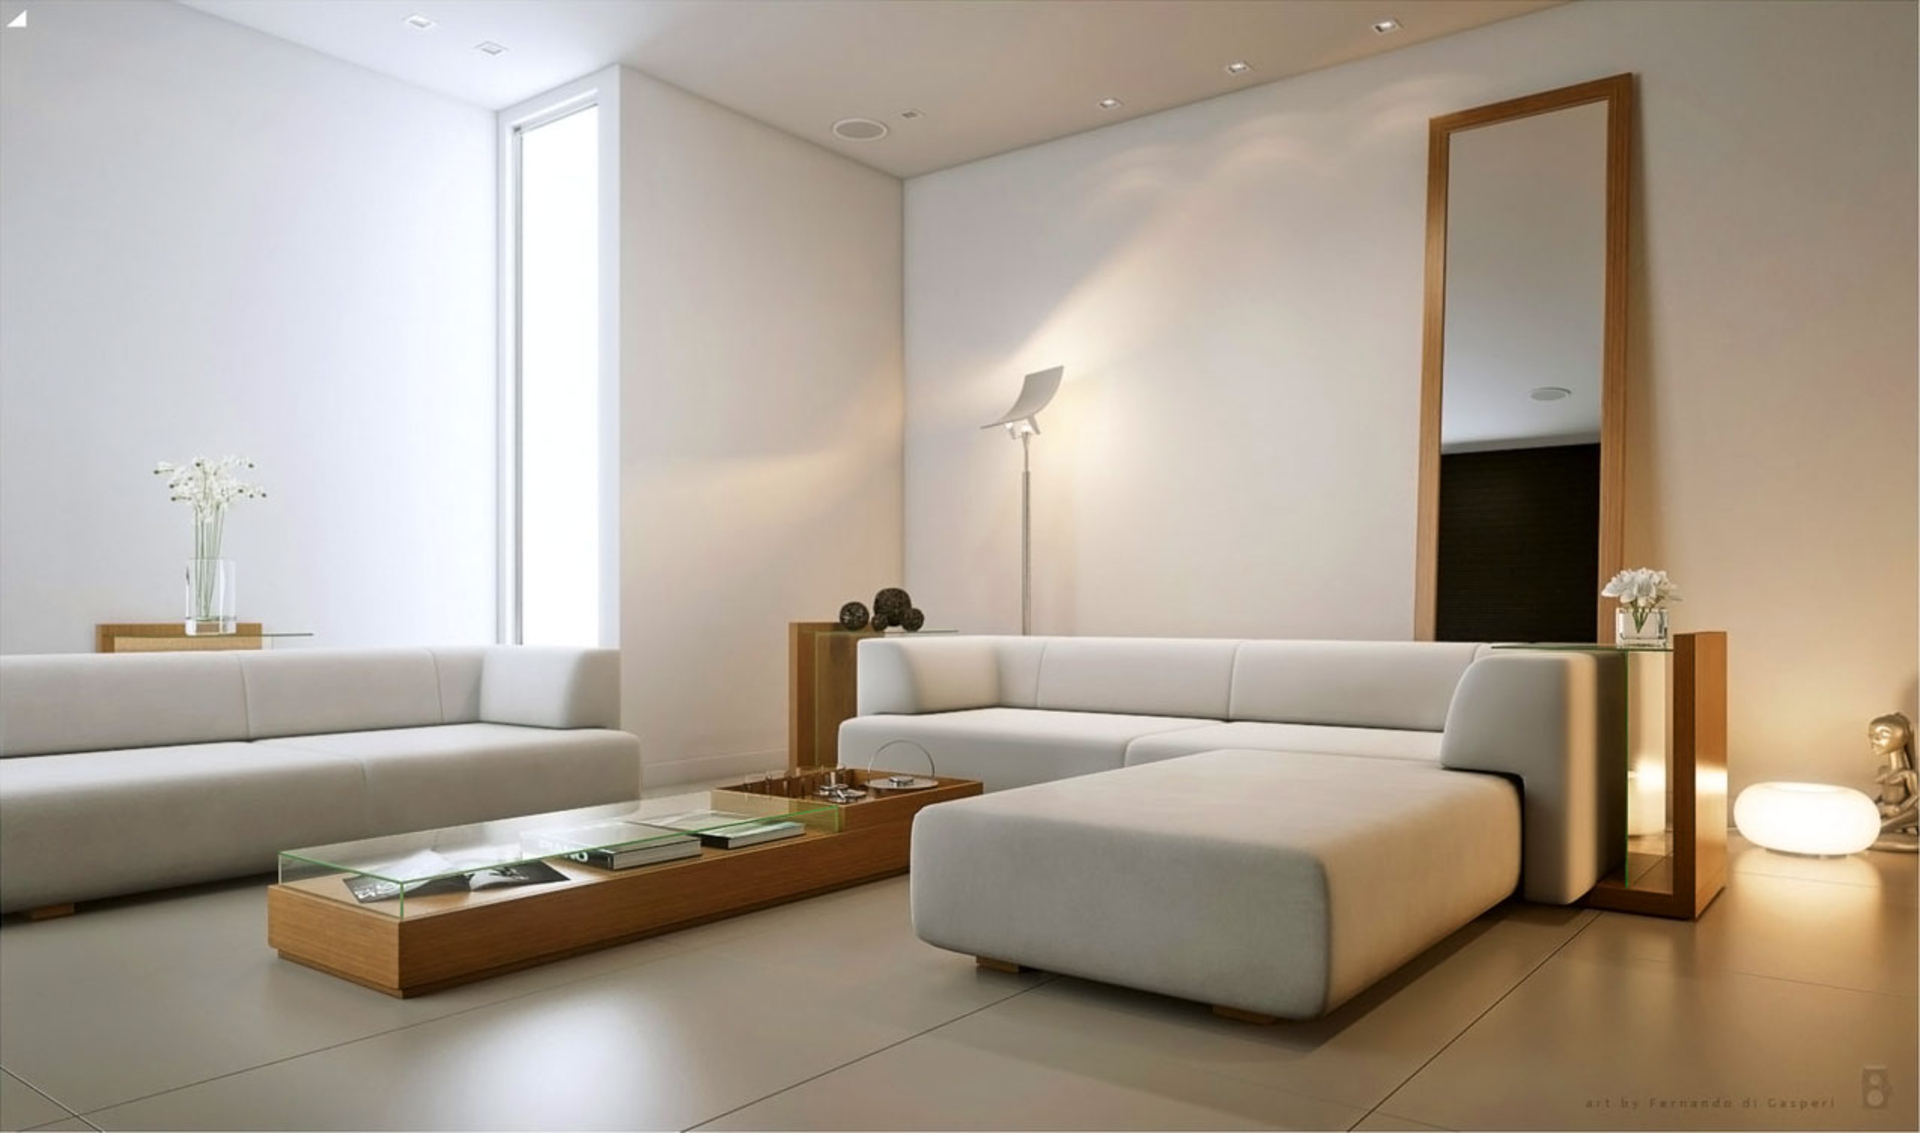 living room minimalist decorating ideas